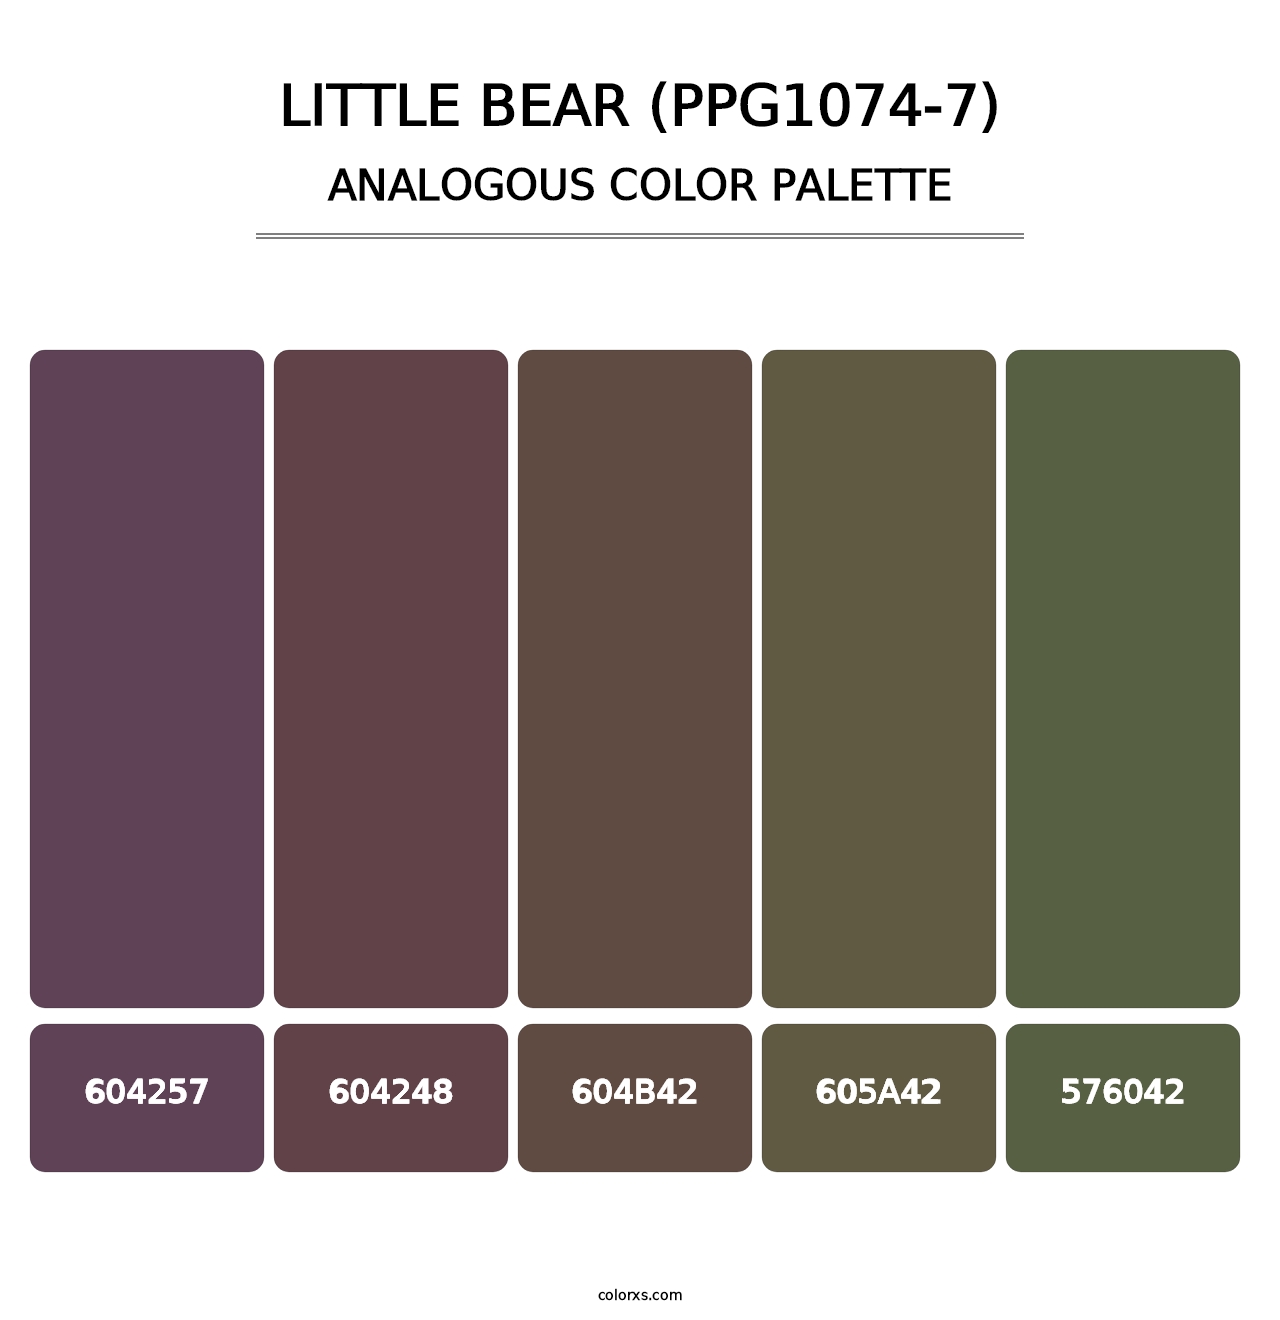 Little Bear (PPG1074-7) - Analogous Color Palette